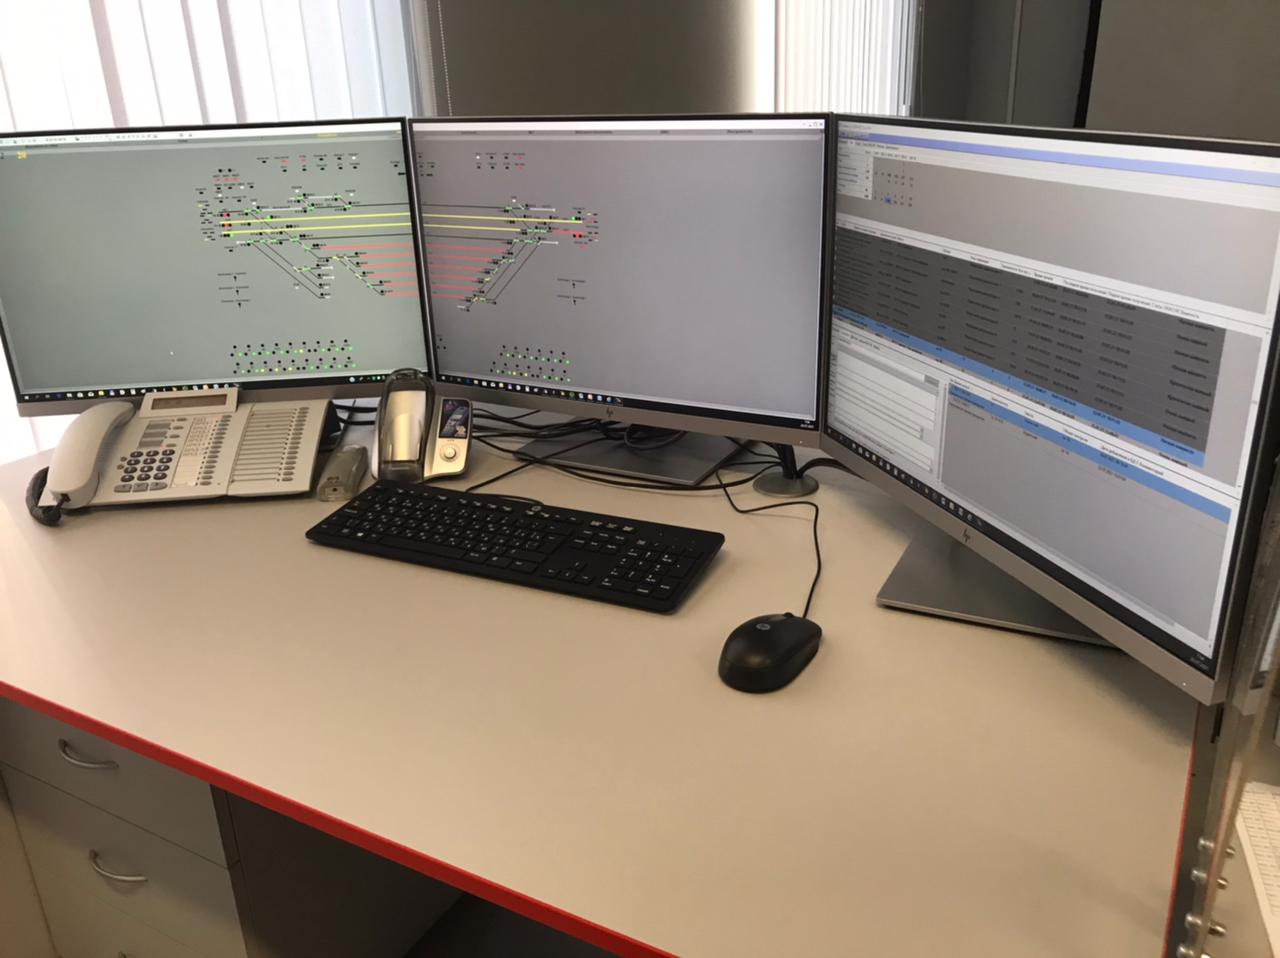 Автоматизированное рабочее место оператора центрального поста диагностирования и мониторинга автоматики и телемеханики движения поездов